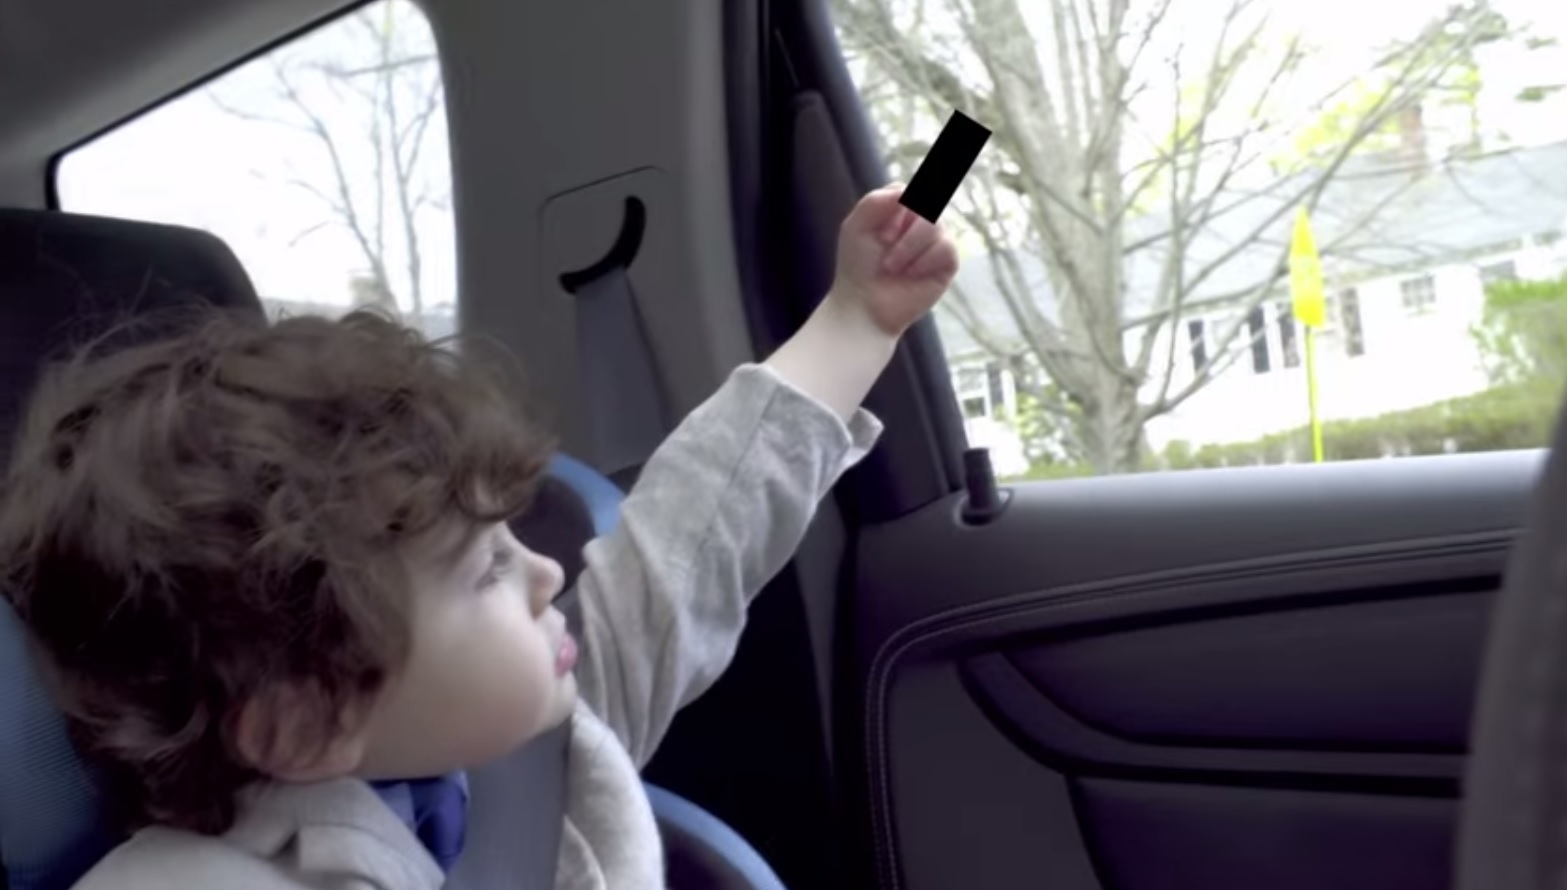 Marca de carros faz anúncio com crianças a dizer palavrões